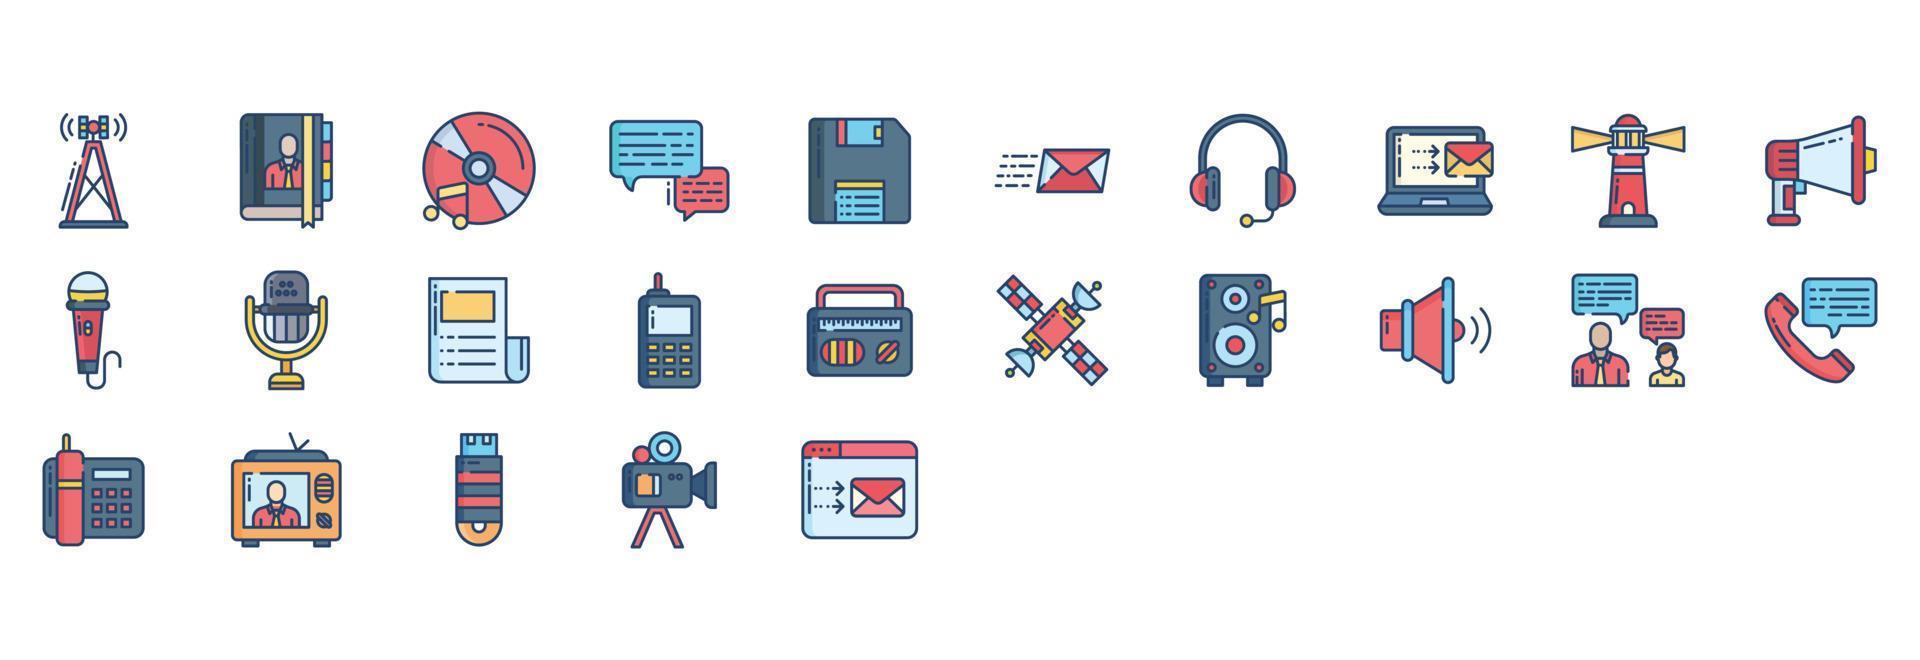 samling av ikoner relaterad till kommunikation, Inklusive ikoner tycka om antenn, bok, chatt, diskett och Mer. vektor illustrationer, pixel perfekt uppsättning